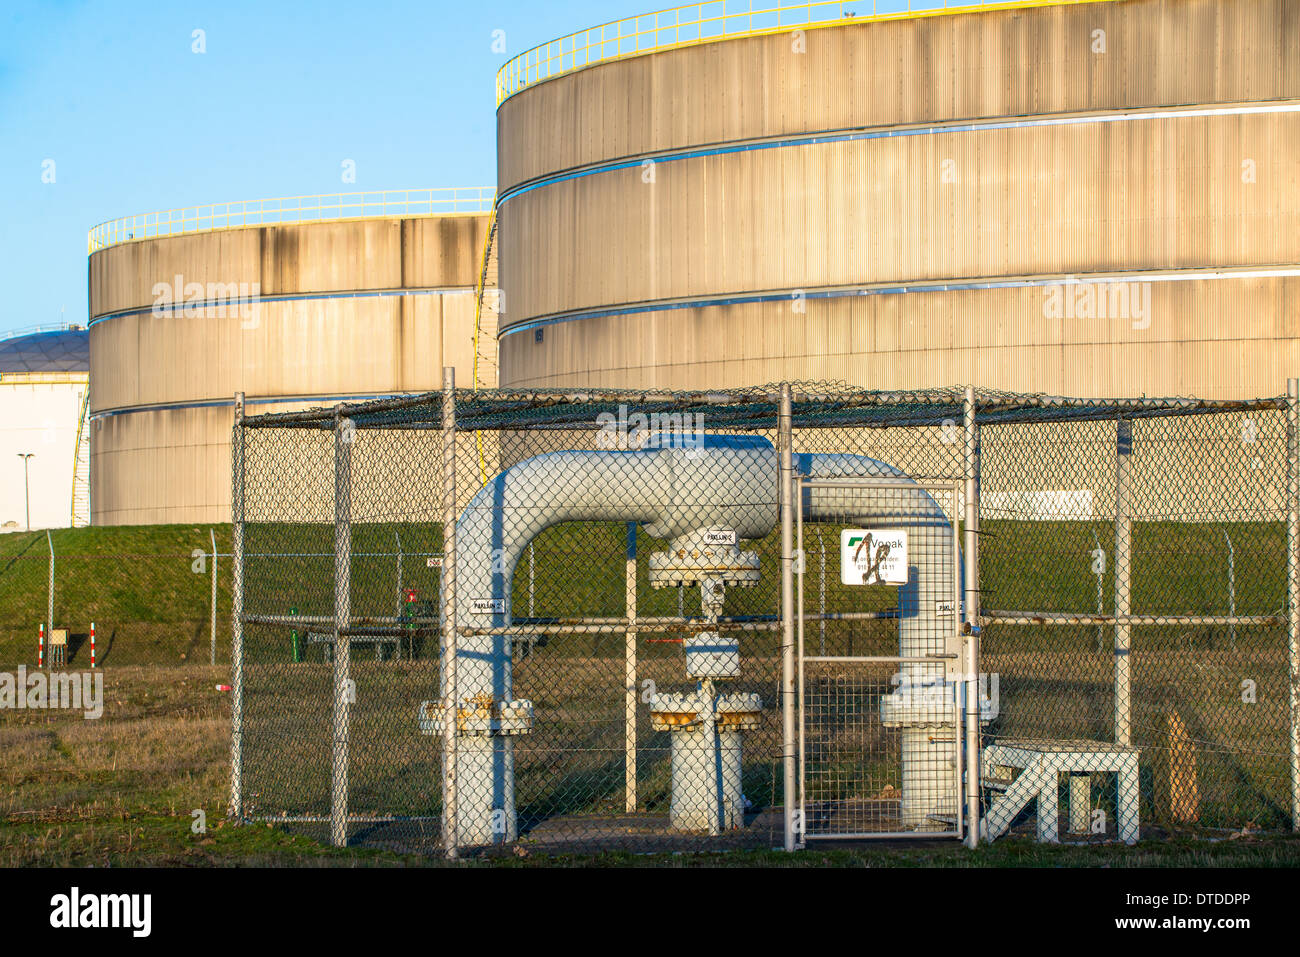 Les réservoirs de stockage de pétrole dans le port de Rotterdam Europoort, Banque D'Images